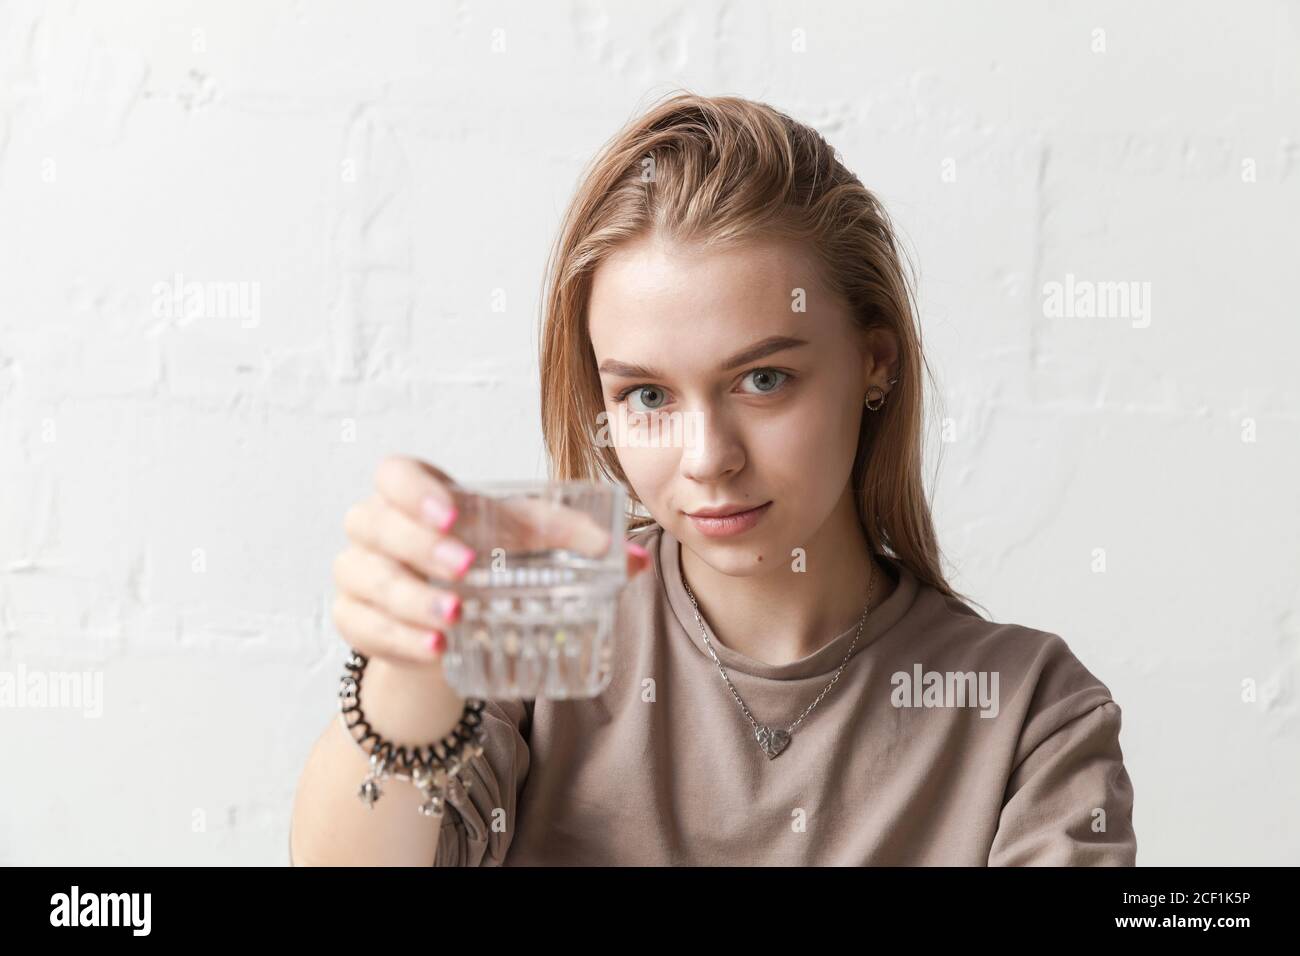 Junge blonde Mädchen hält ein Glas Wasser, Nahaufnahme Foto mit selektiven weichen Fokus auf Gesicht Stockfoto